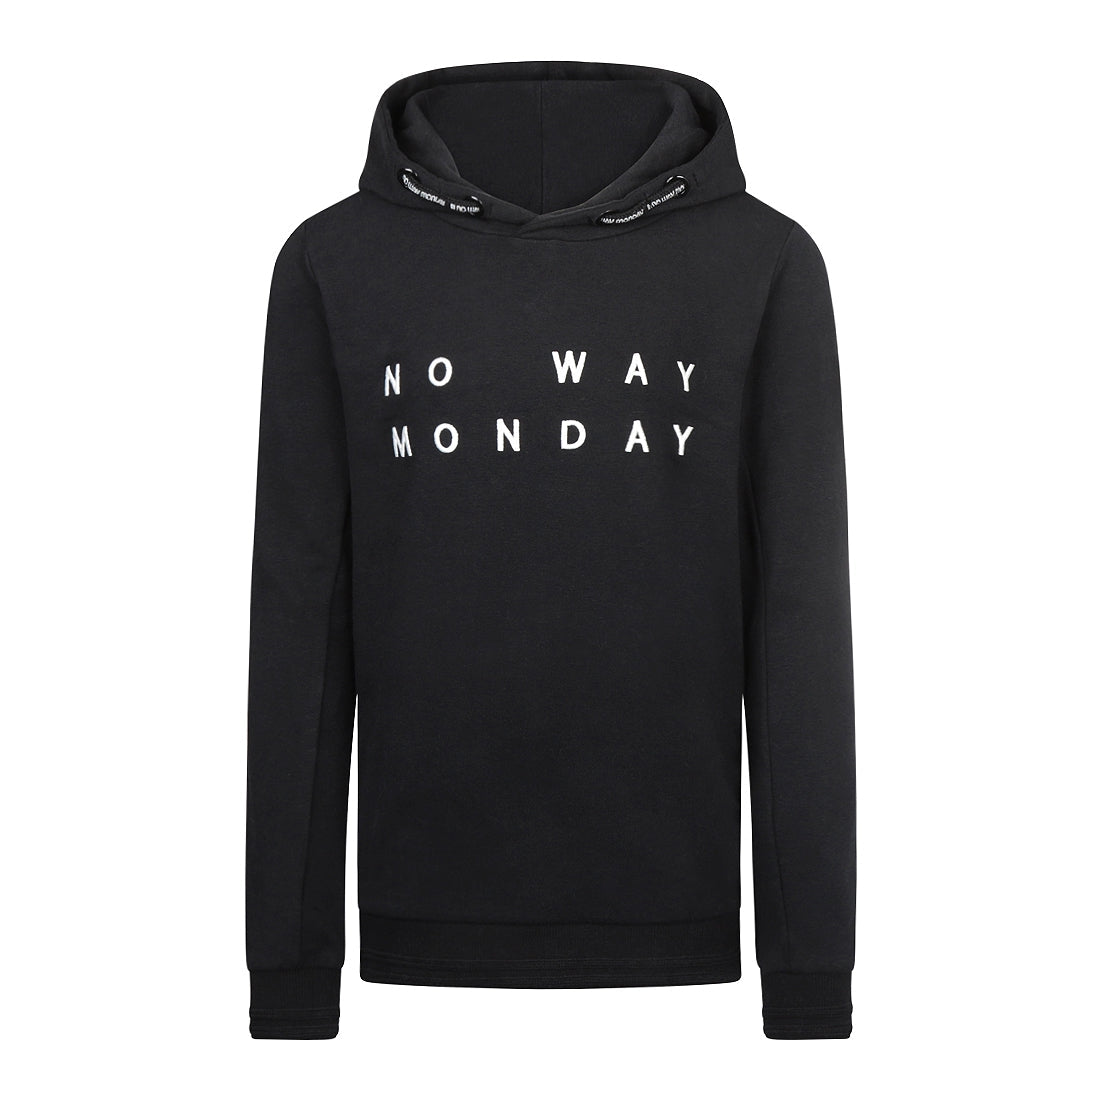 Jongens Sweater with hood van No Way Monday in de kleur Black in maat 164.